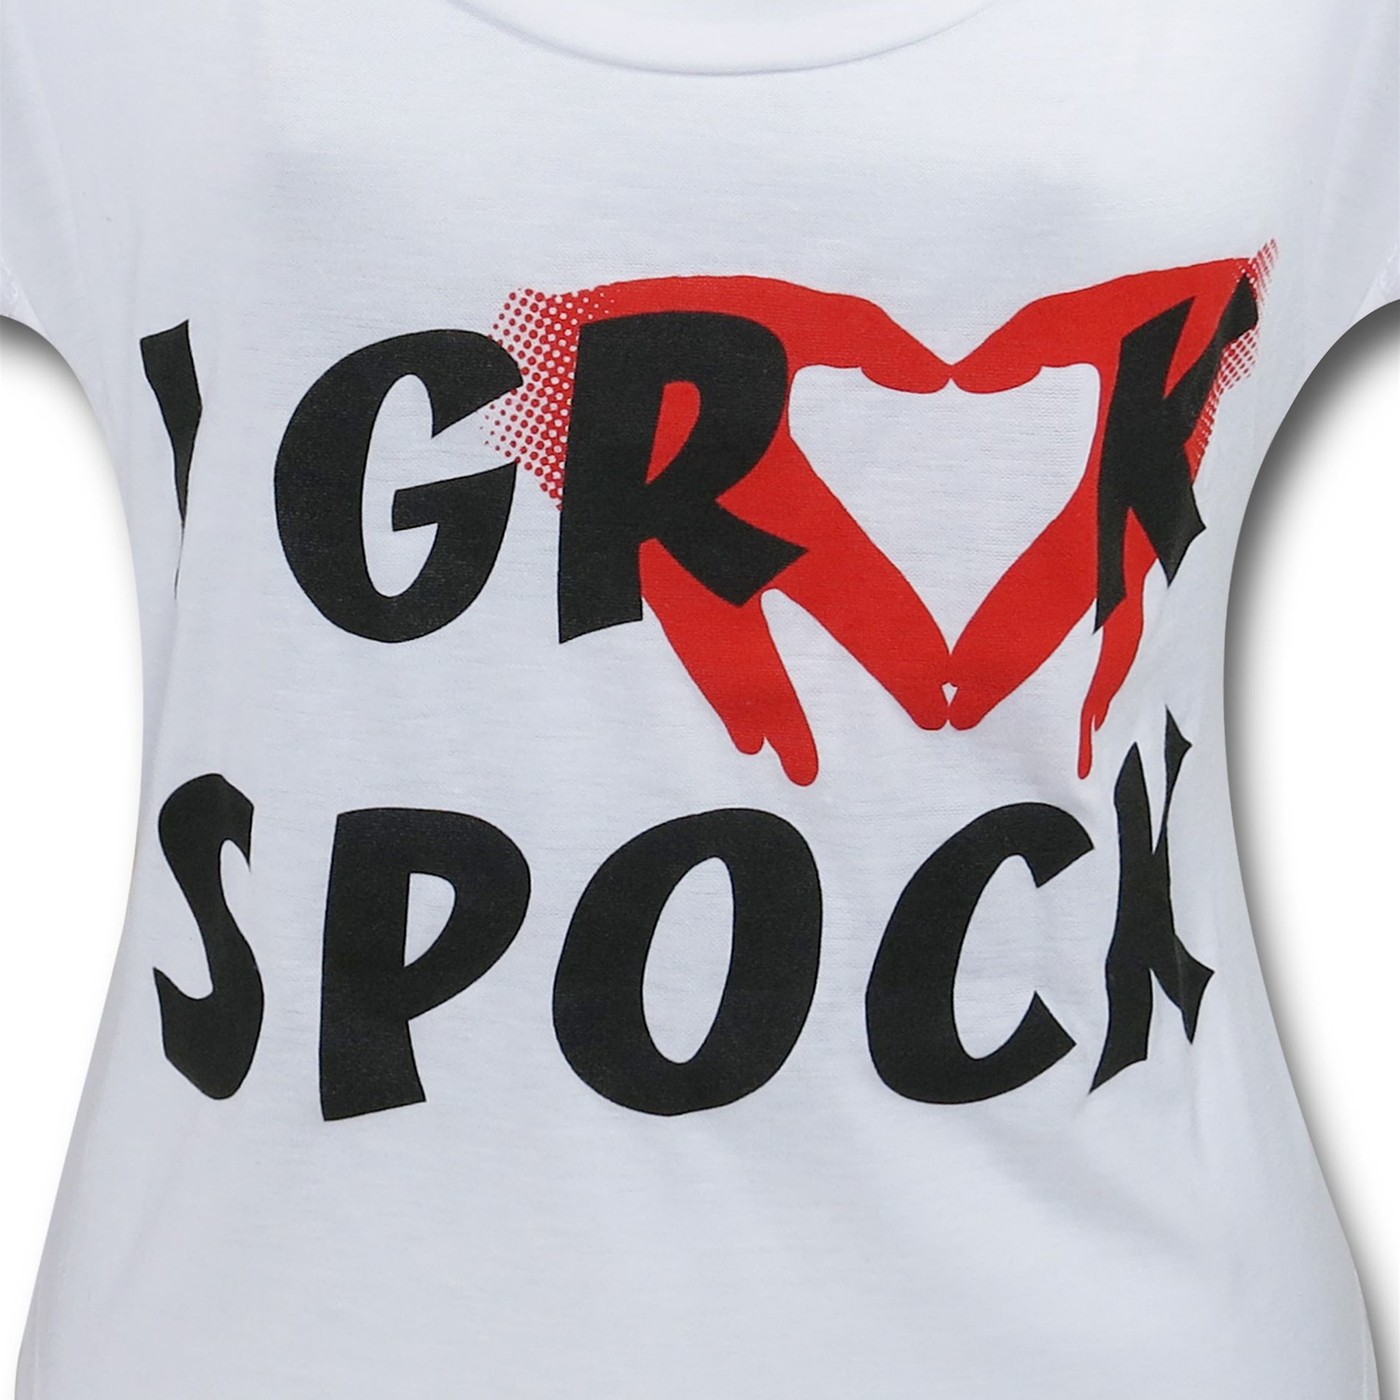 Star Trek Grock Spock Women's T-Shirt